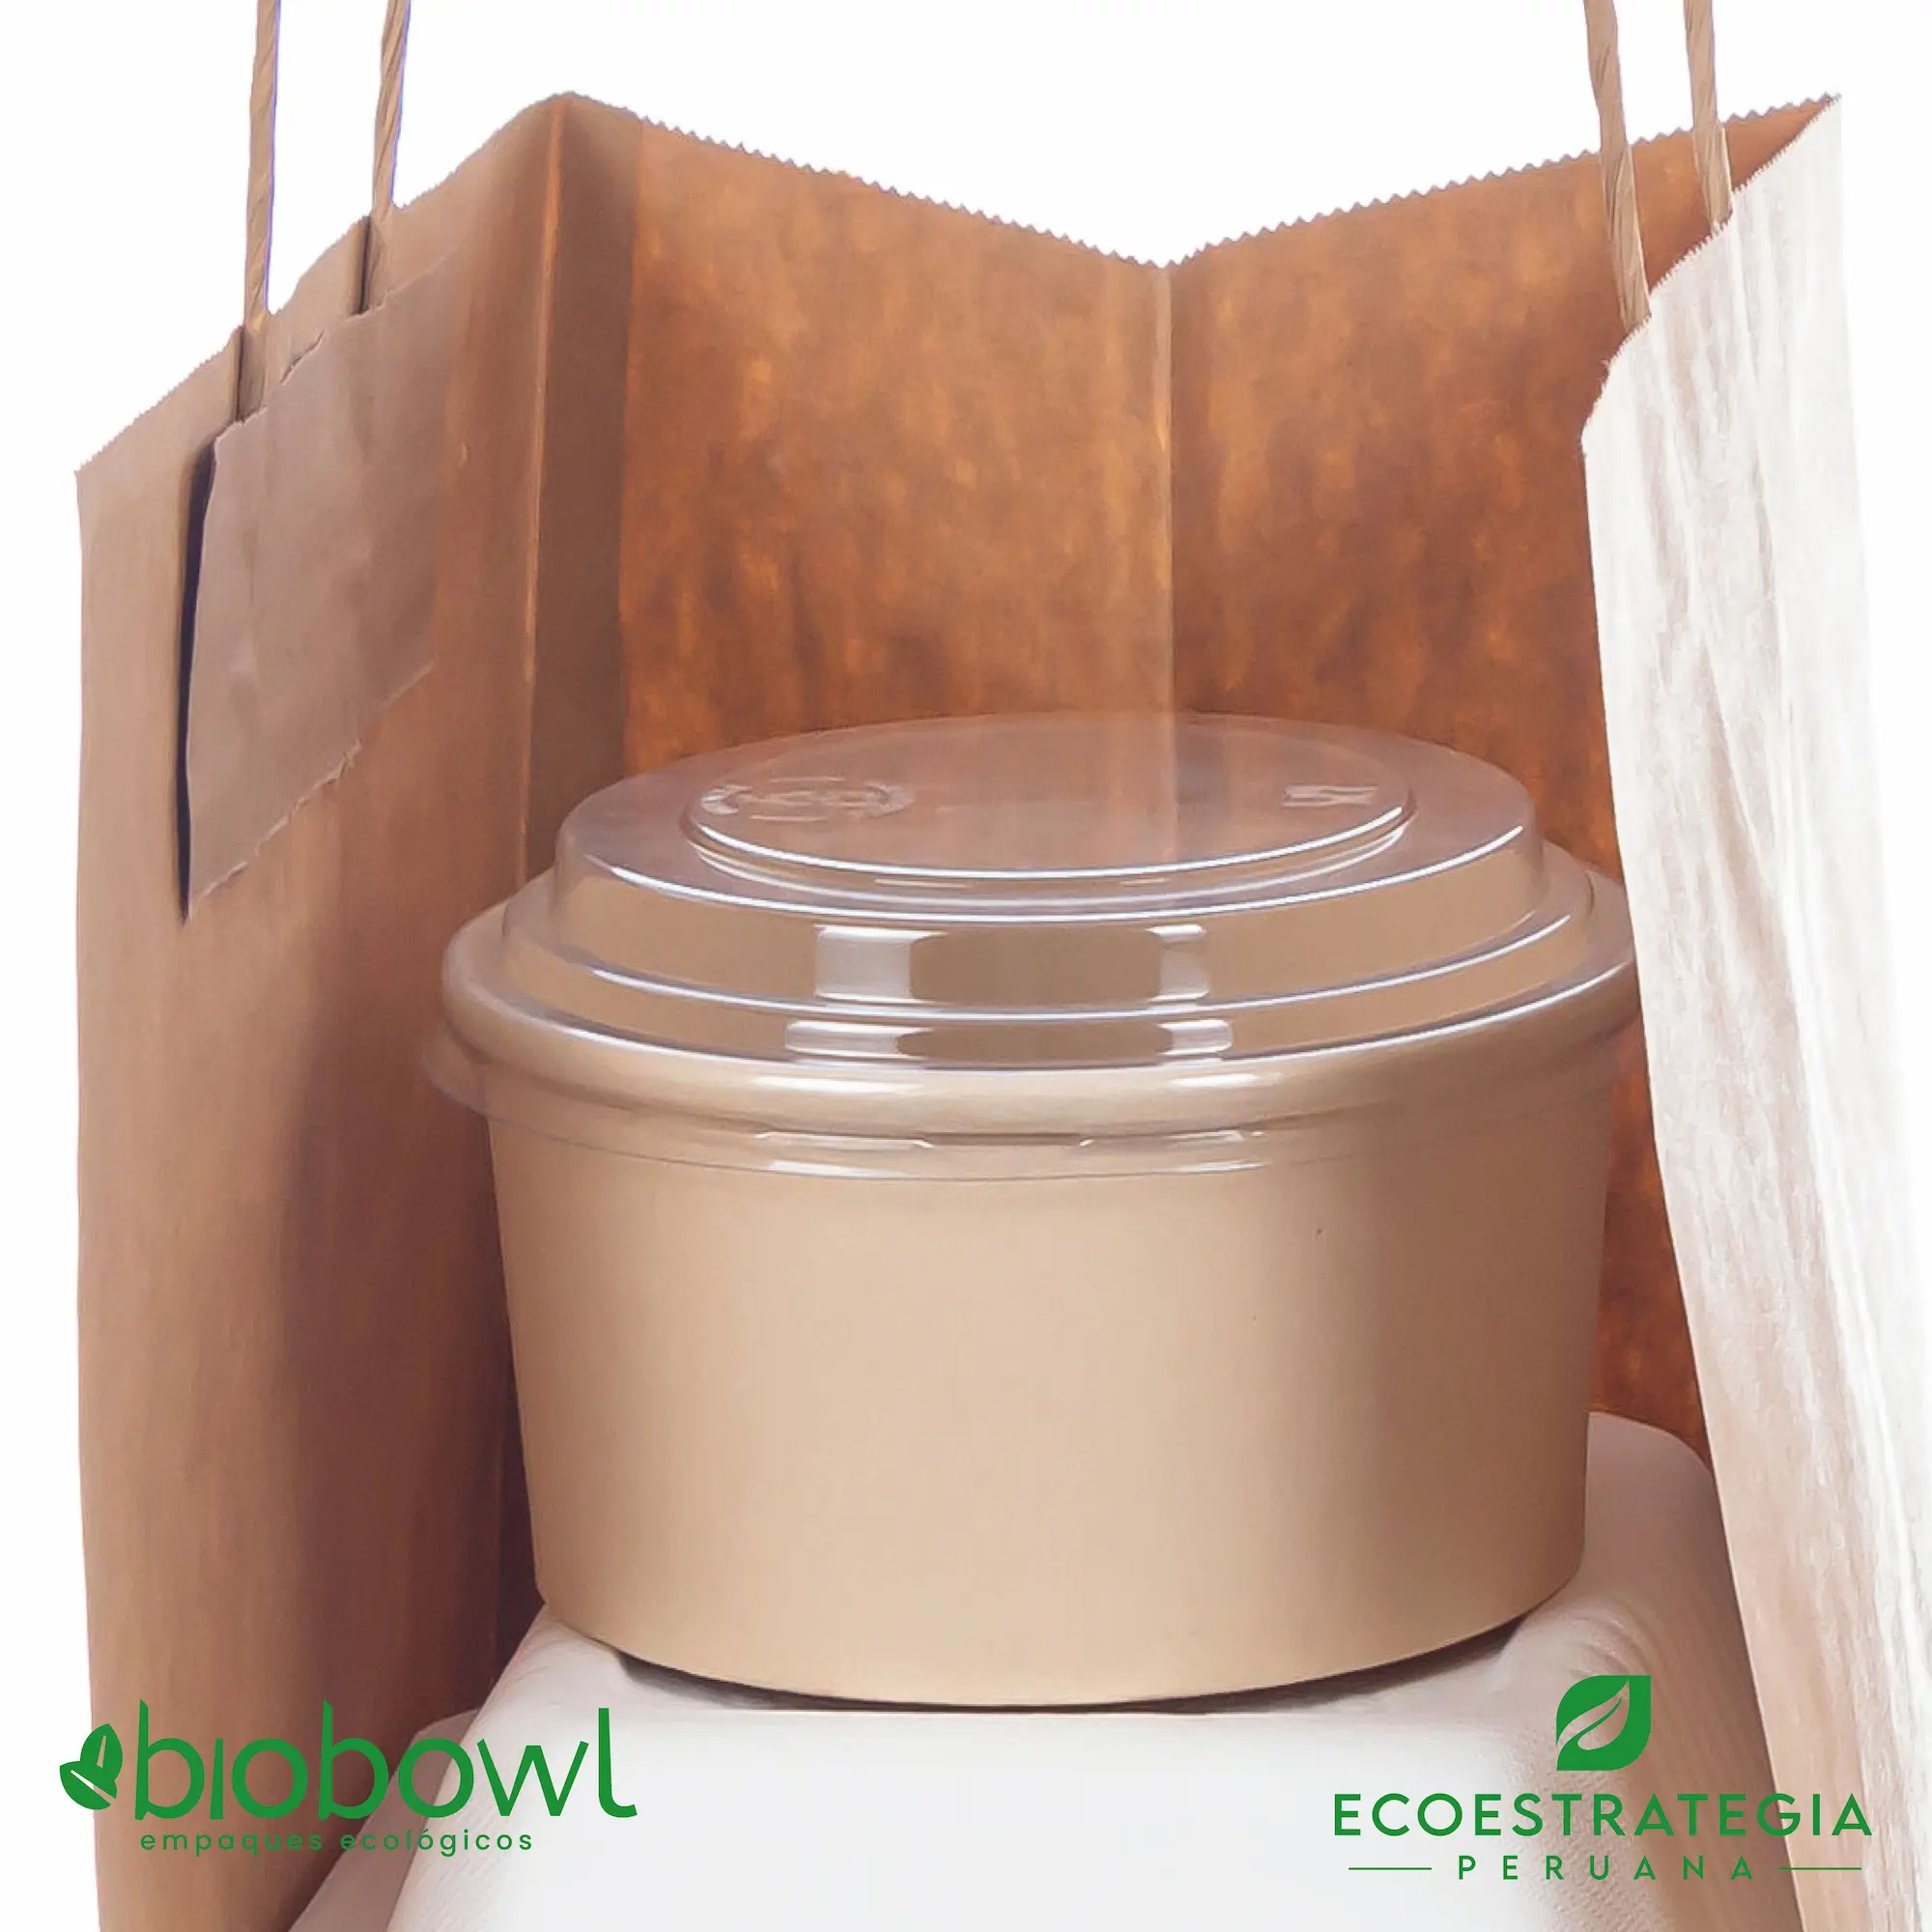 El bowl bambú biodegradable DE 600ml o EP-600, es también conocido como bowl bamboo 600ml, bambú sopero 600ml, bambú salad 600ml, bowl para ensalada con tapa pet 600ml o sopero con fibra de bambú 600ml, bowl bambú ecologico, bowl bambú reciclable, bowl descartable, bowl bambu postres 600ml, bowl bambu helados 600ml